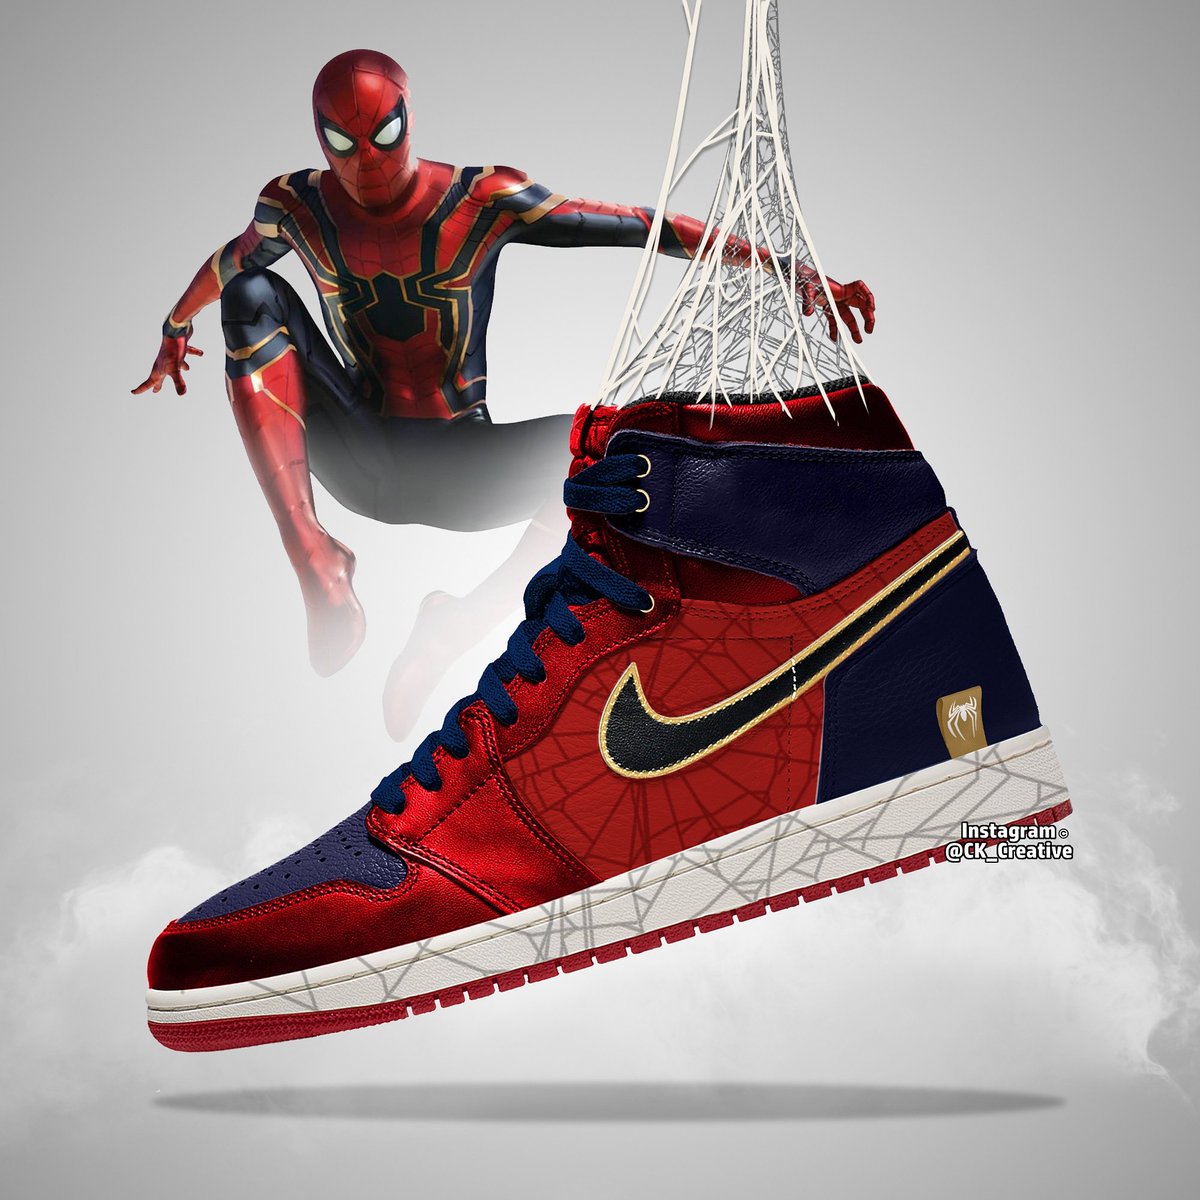 Chris Kemp on Twitter: "Spiderman Nike Jordan Design #avengers #endgame #spiderman #SpiderVerse #SpiderManFarFromHome #nile #nikejordans https://t.co/FKzdg481gE" / Twitter